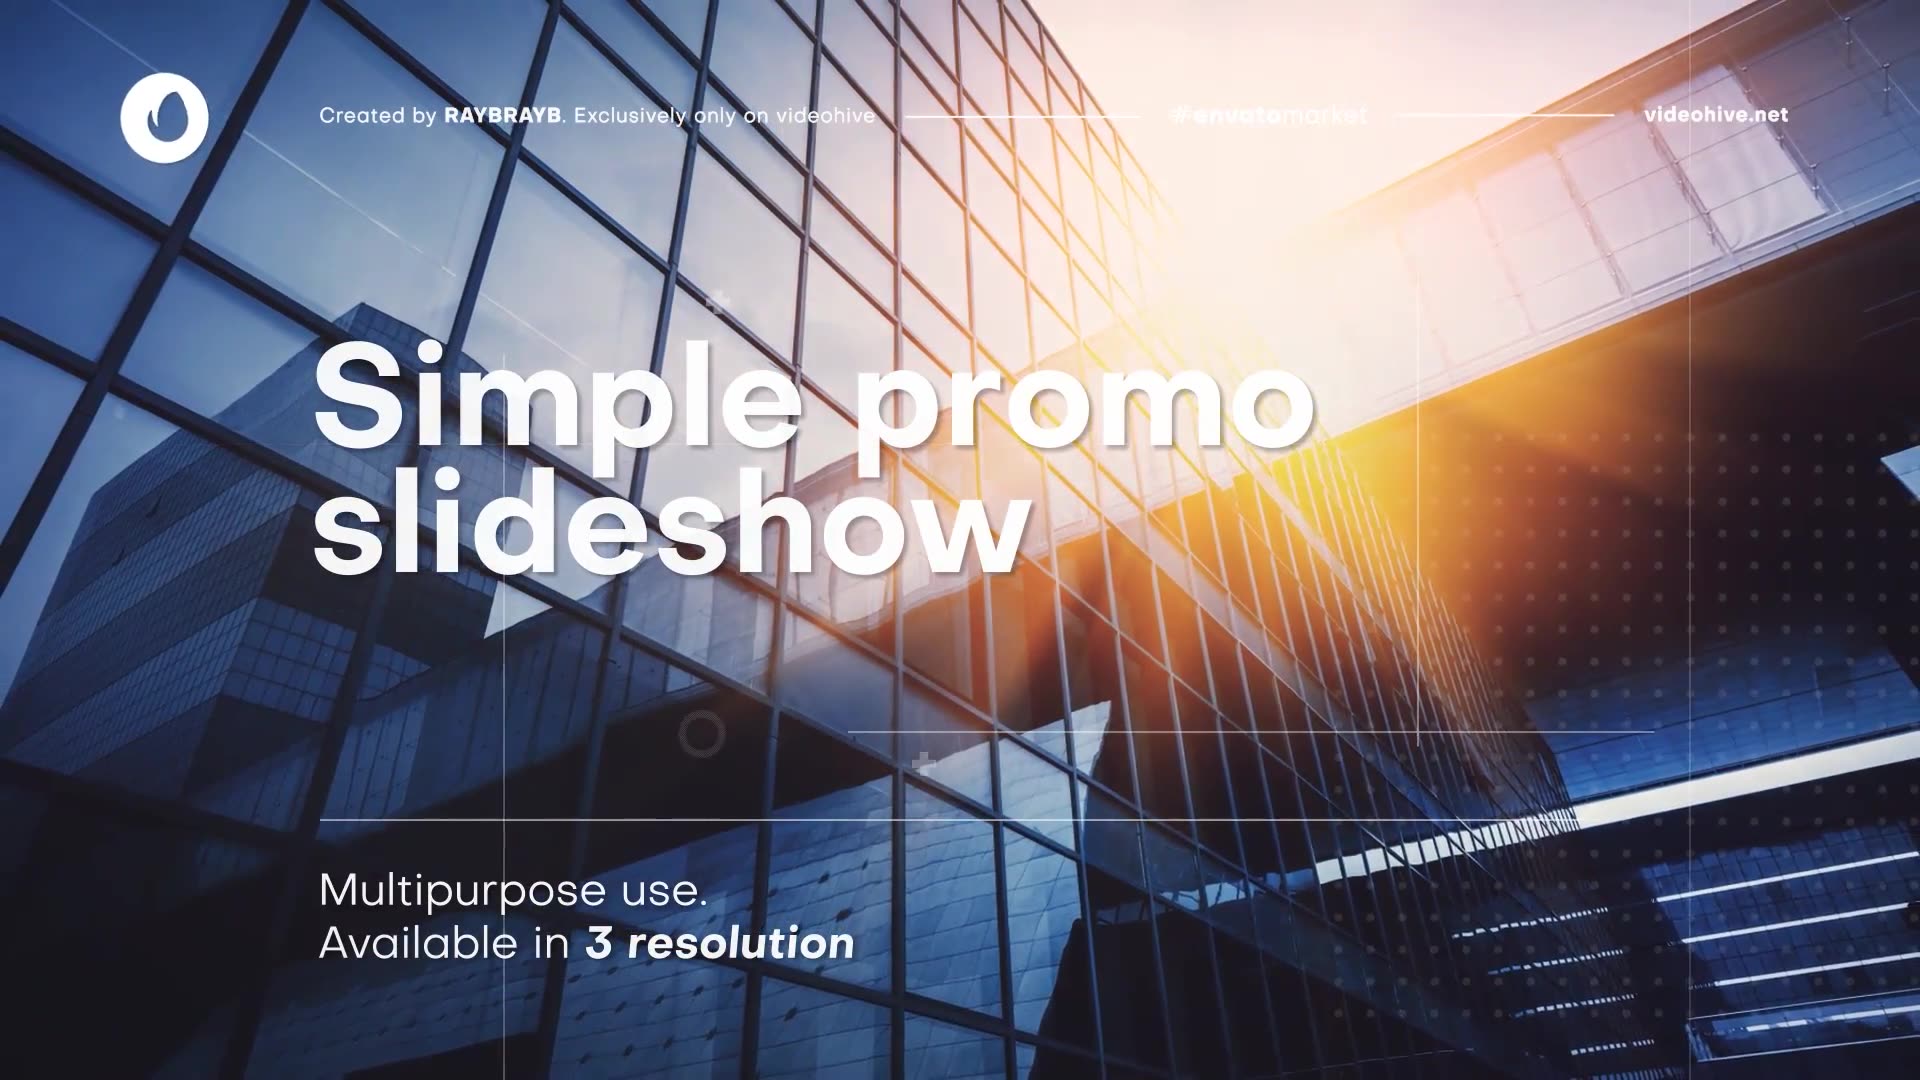 Minimal Promo Slideshow 6 | Premiere Pro Videohive 36517385 Premiere Pro Image 2